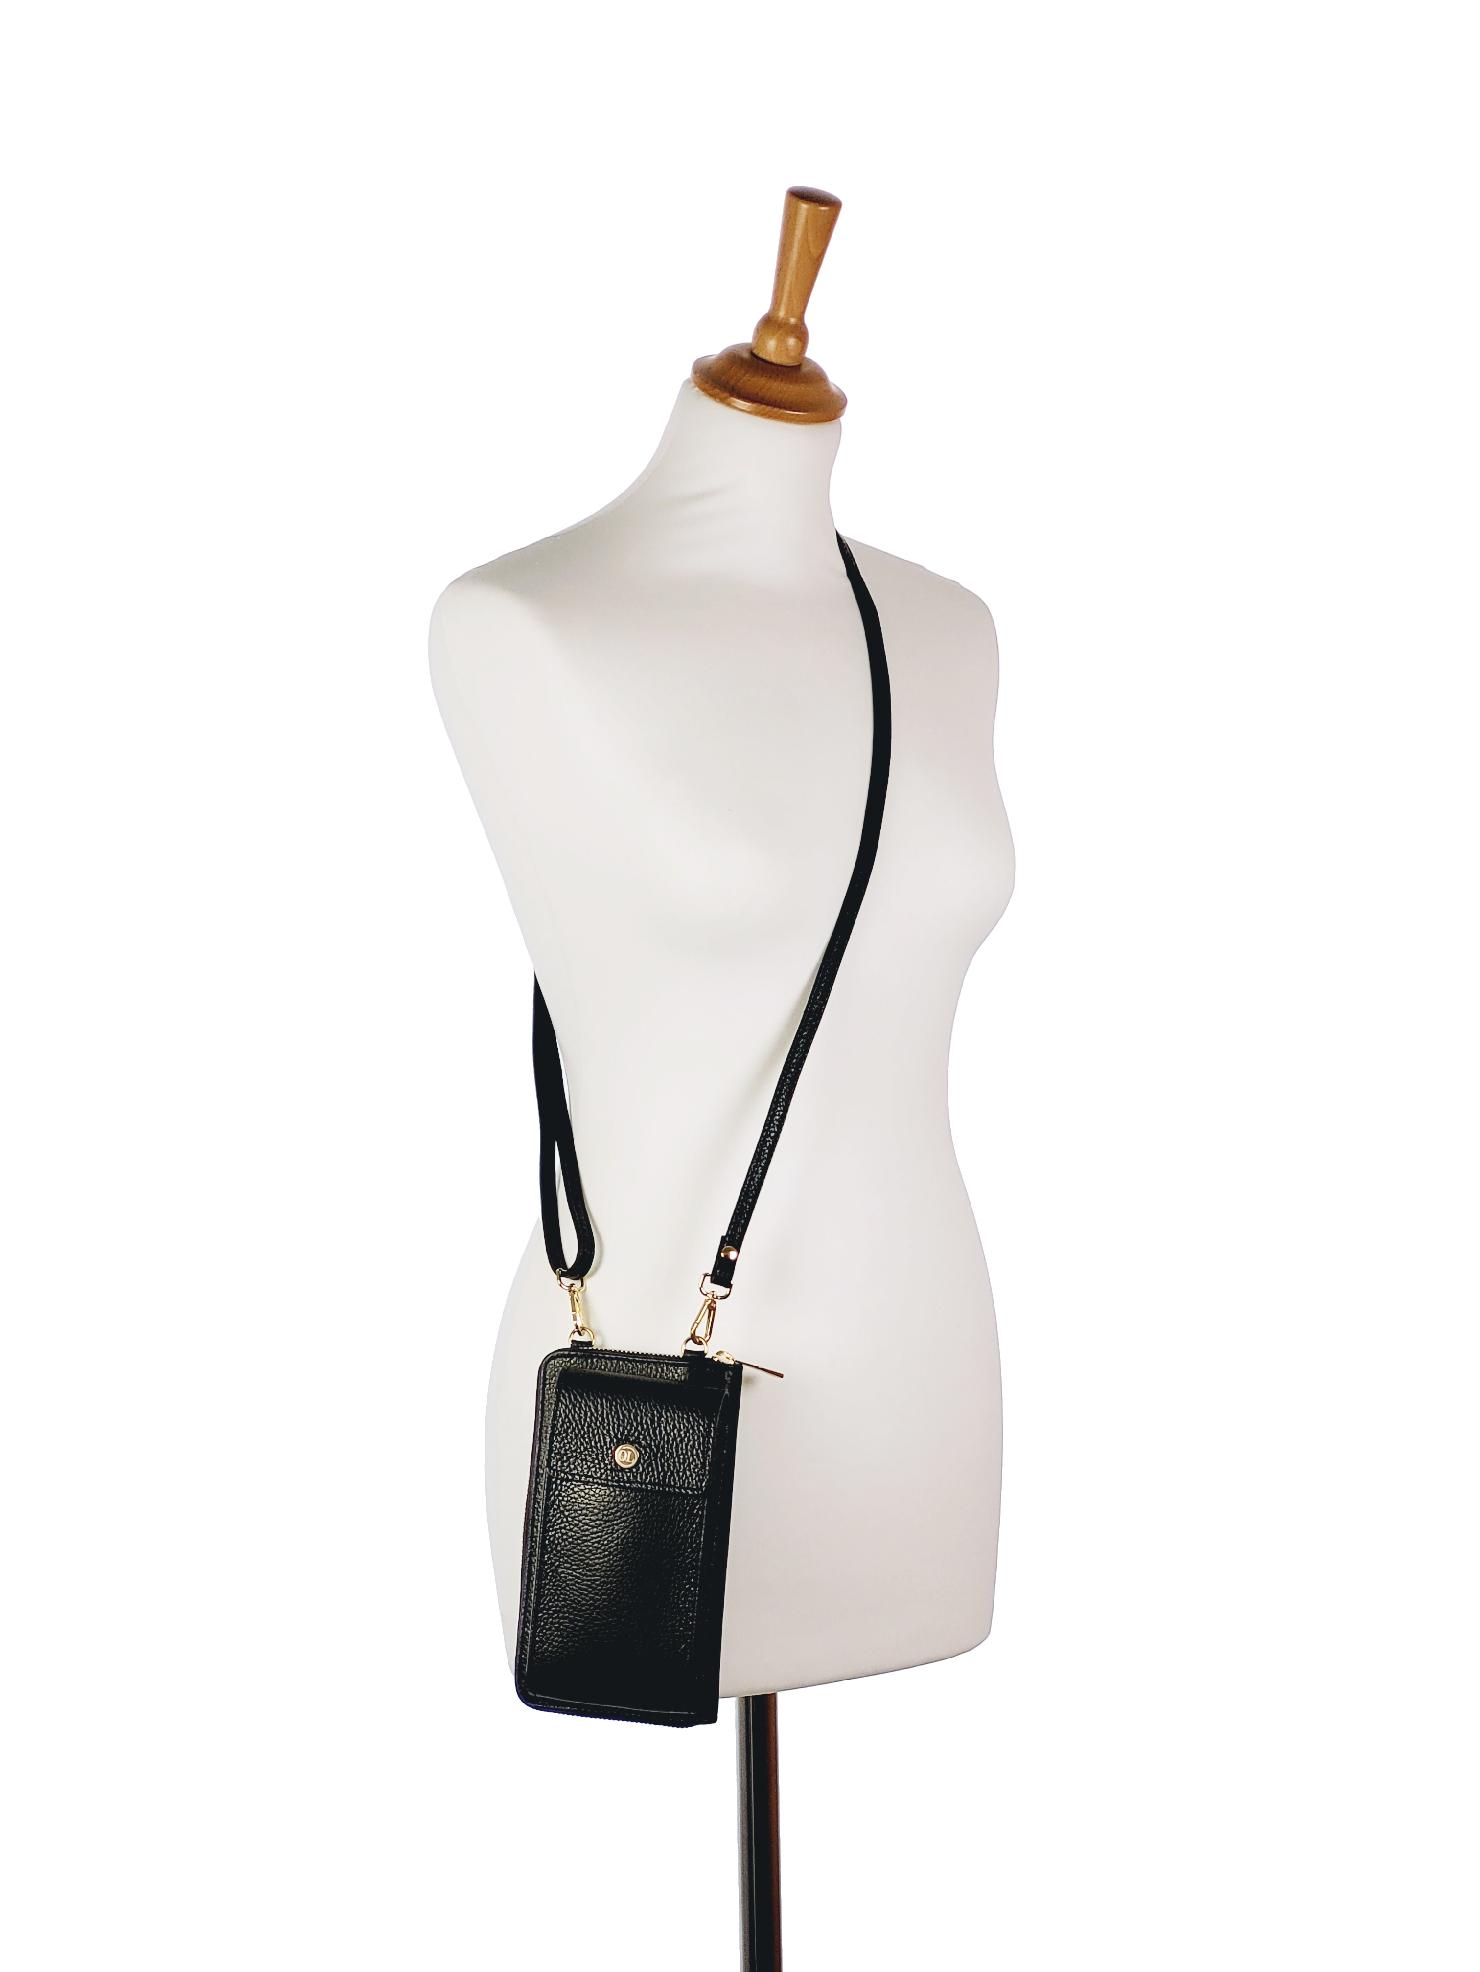 OLIVIA SHOES praktická čierna kožená crossbody peňaženka s vreckom MICHAELA